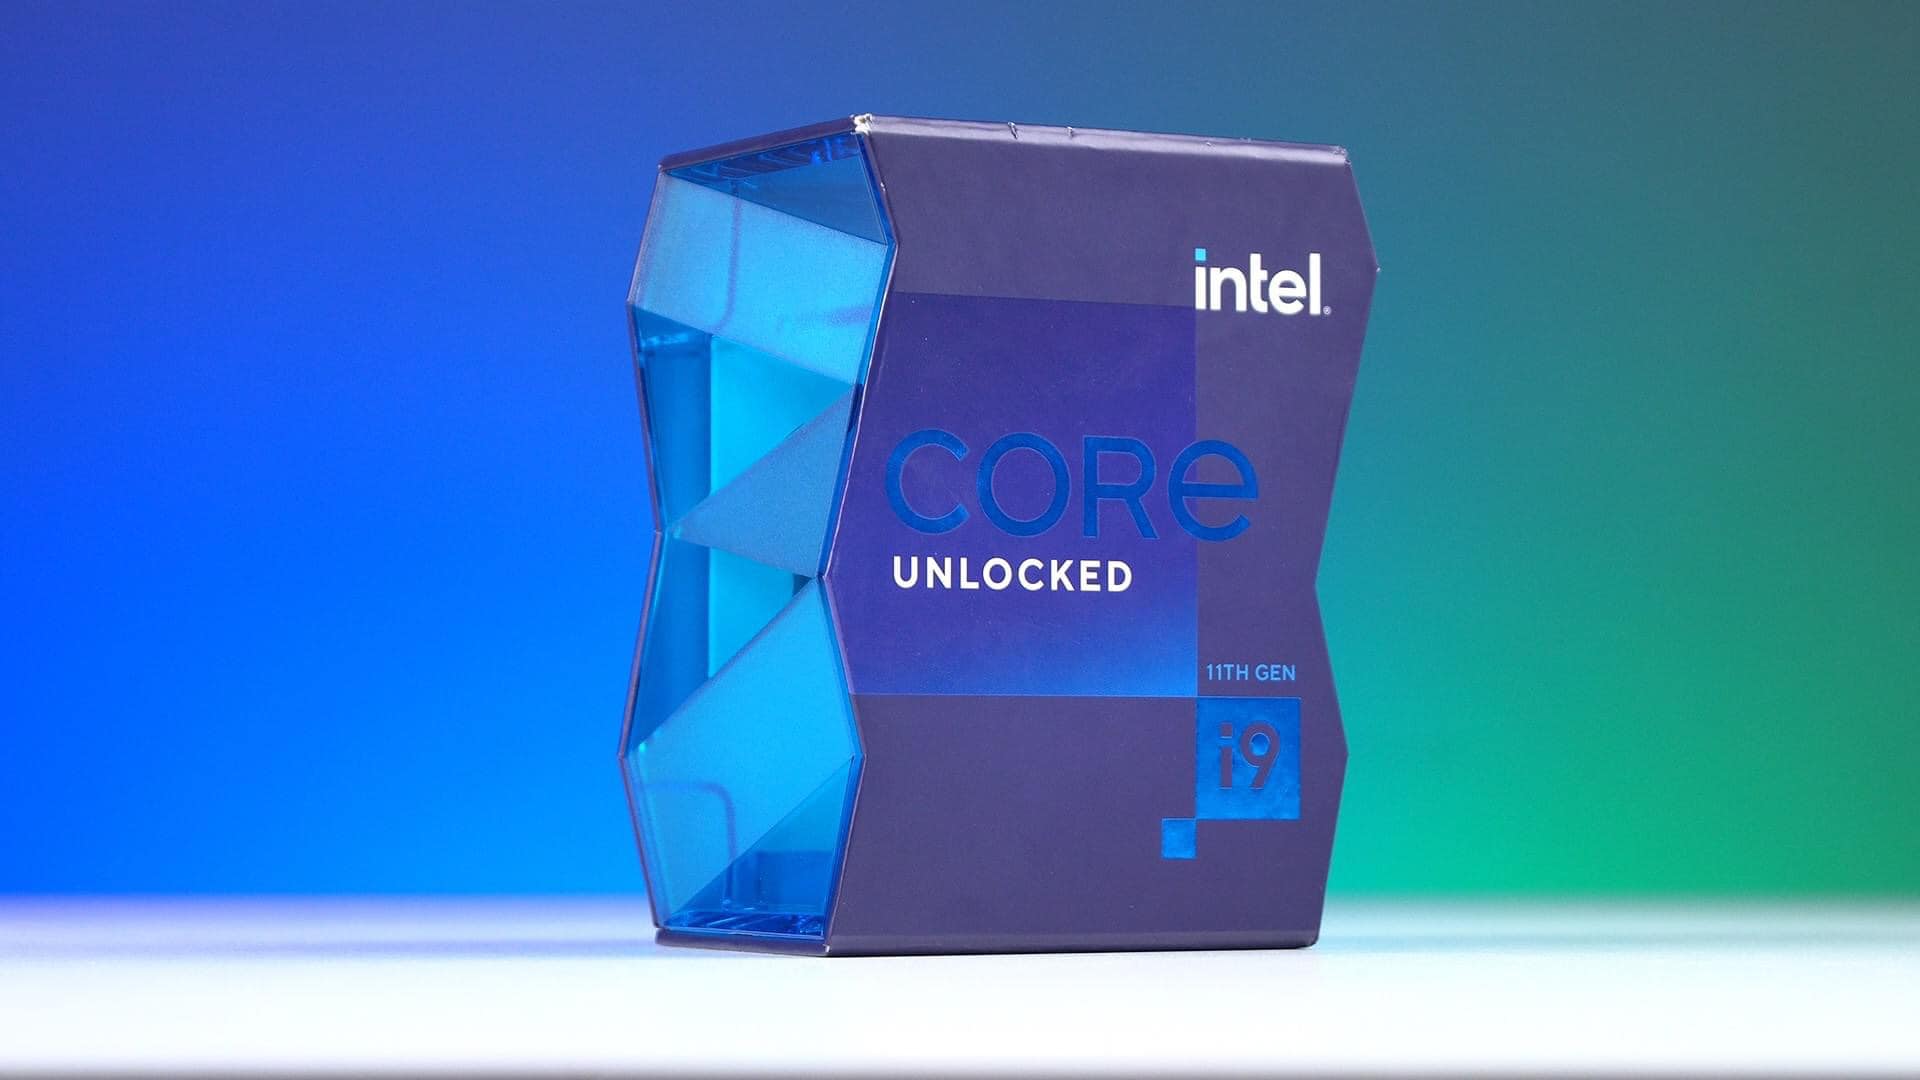 Intel Core i9 11900K - Bậc thầy hiệu năng cho nhu cầu chơi game và xử lý công việc với máy tính cá nhân